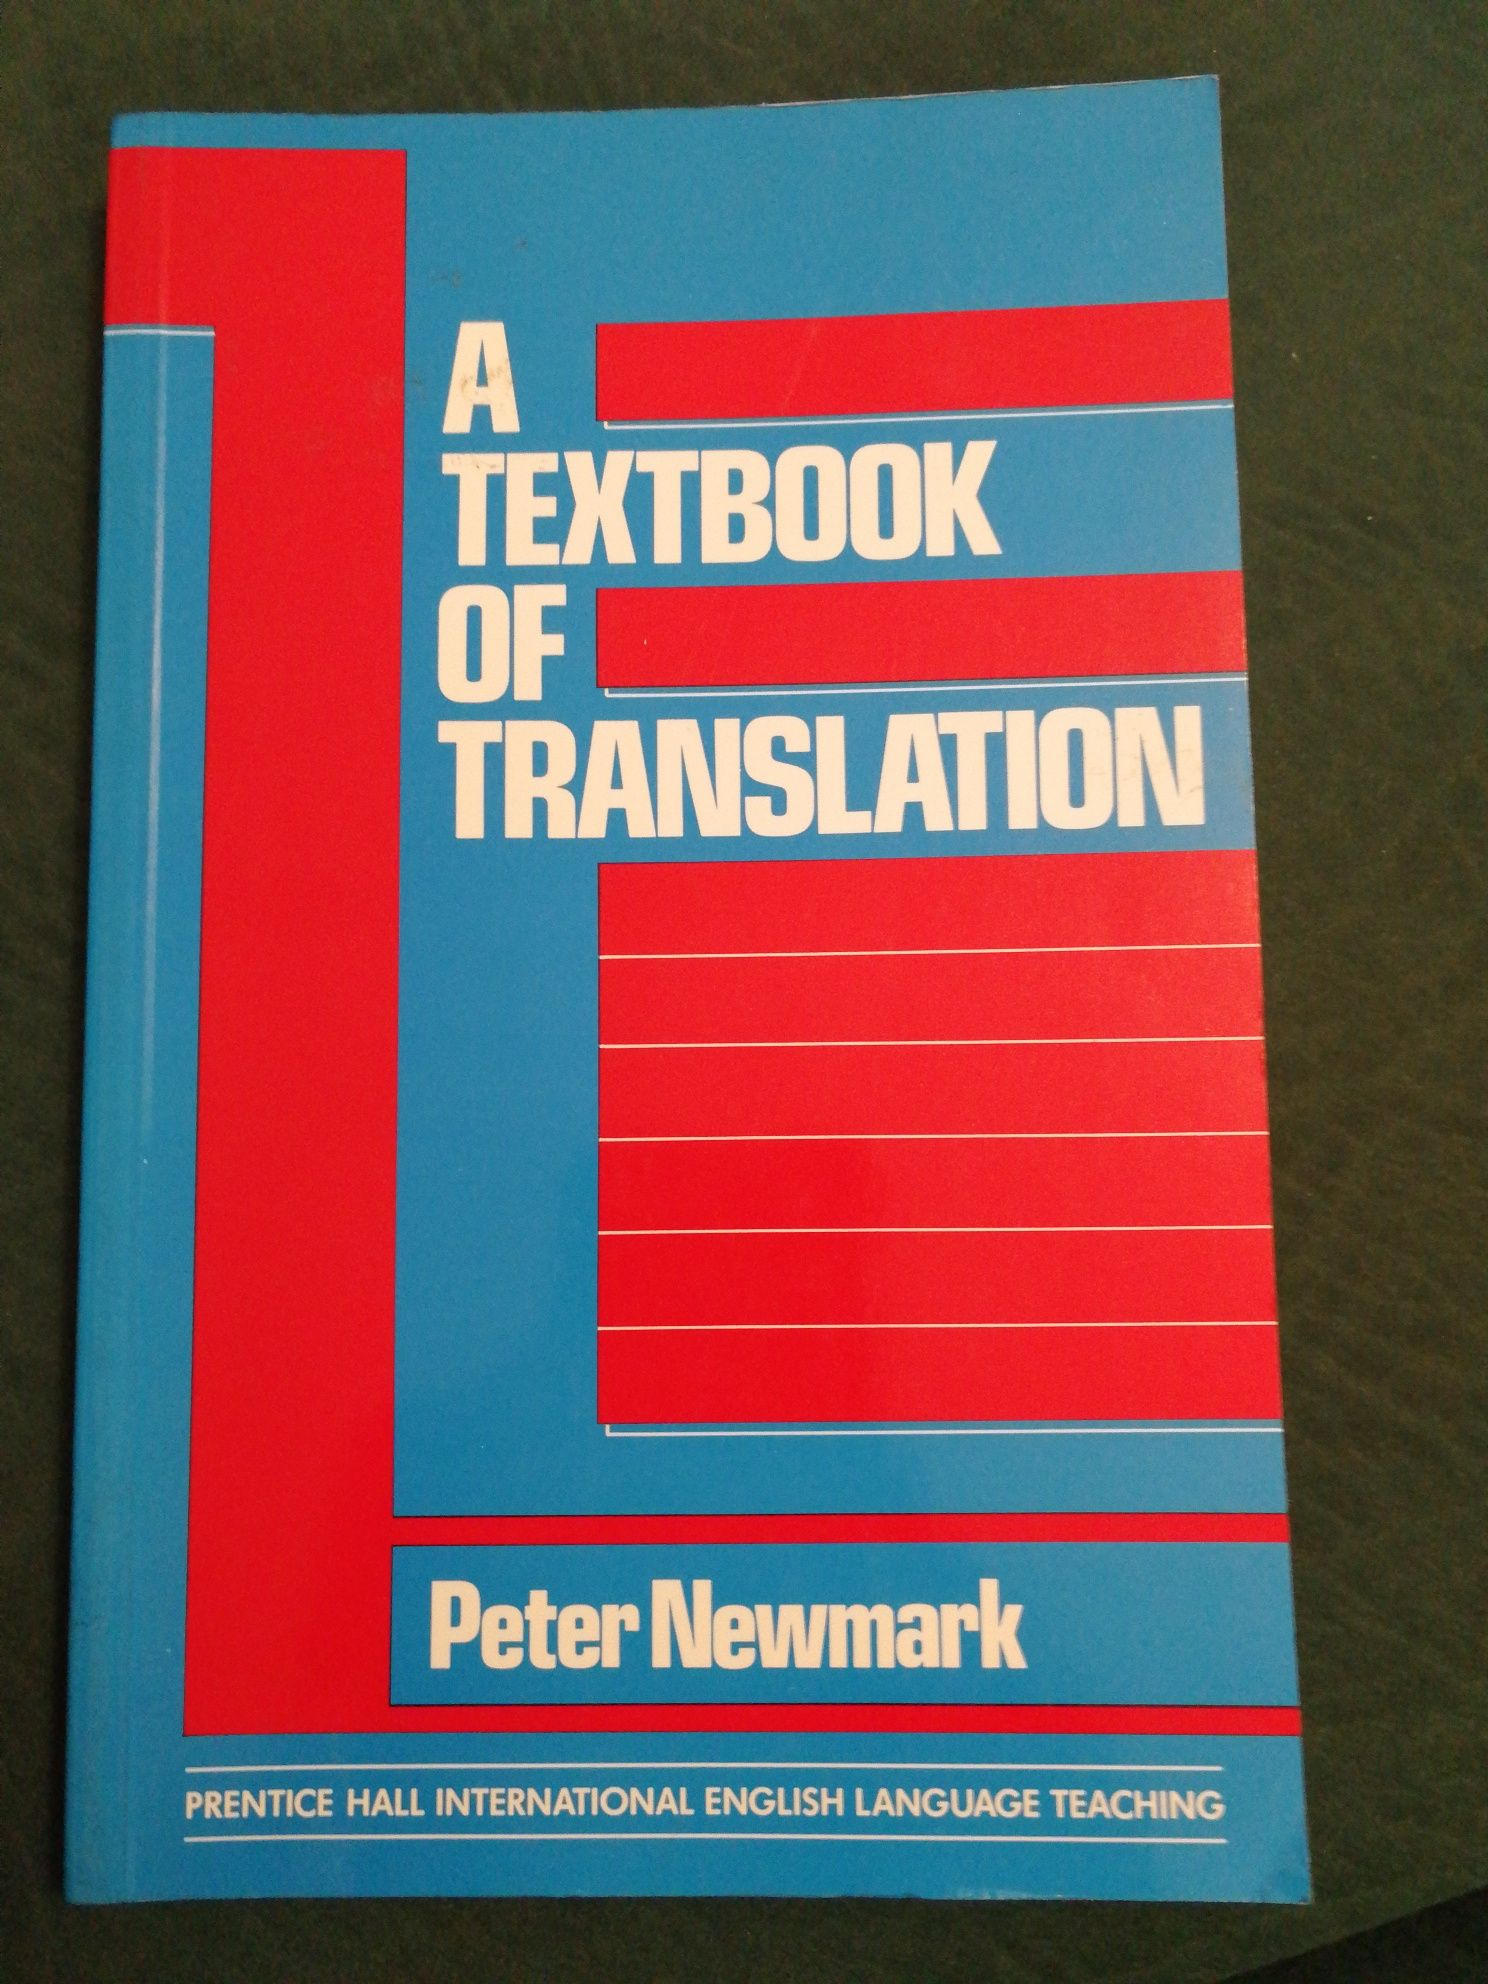 Livro "A Textbook of Translation" de Peter Newmark